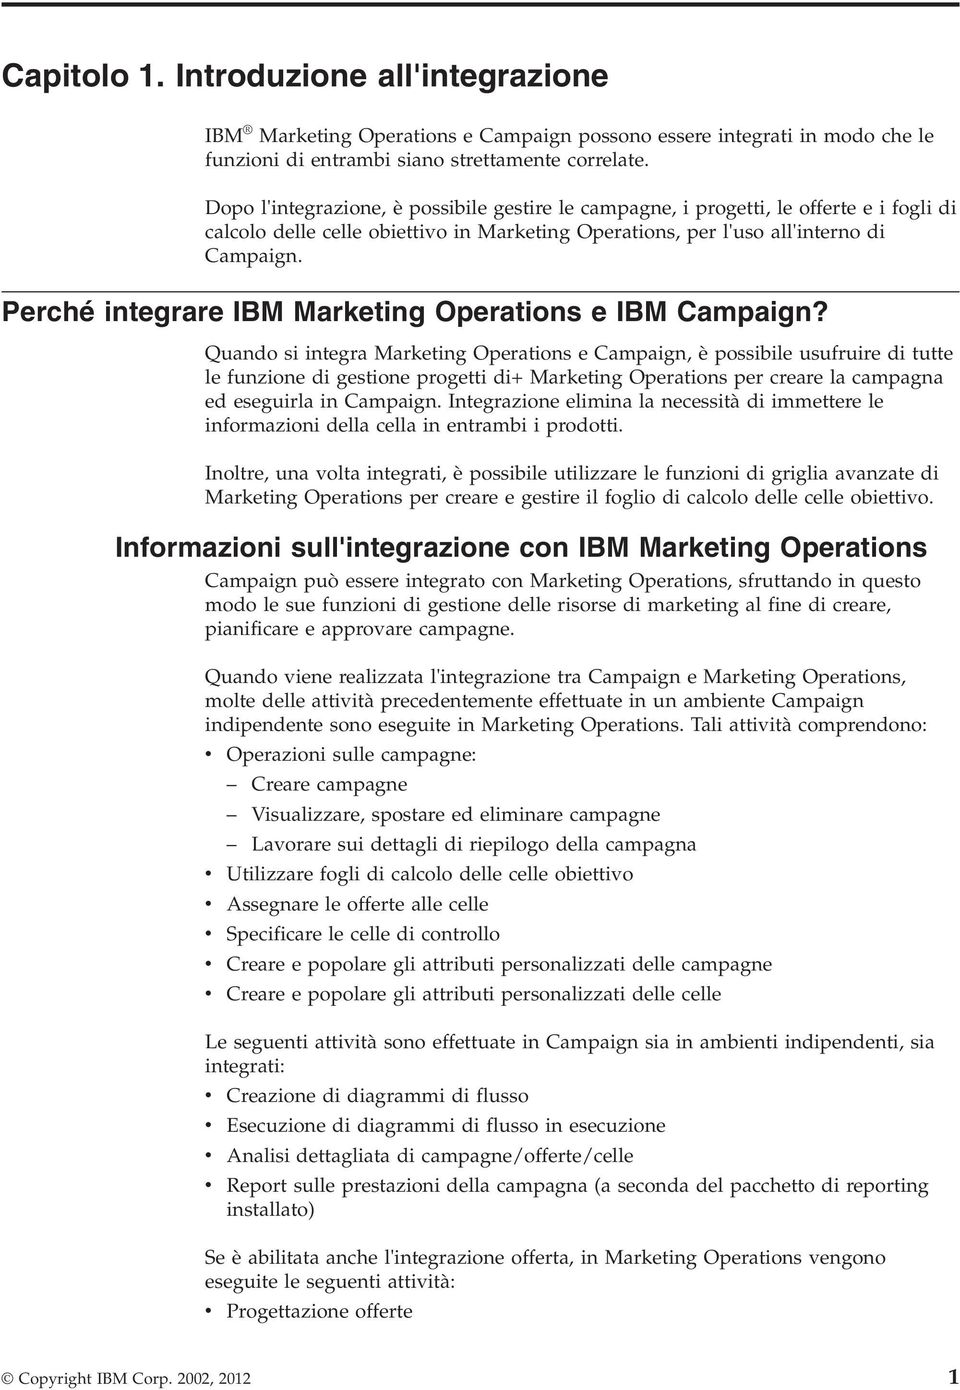 Perché integrare IBM Marketing Operations e IBM Campaign?